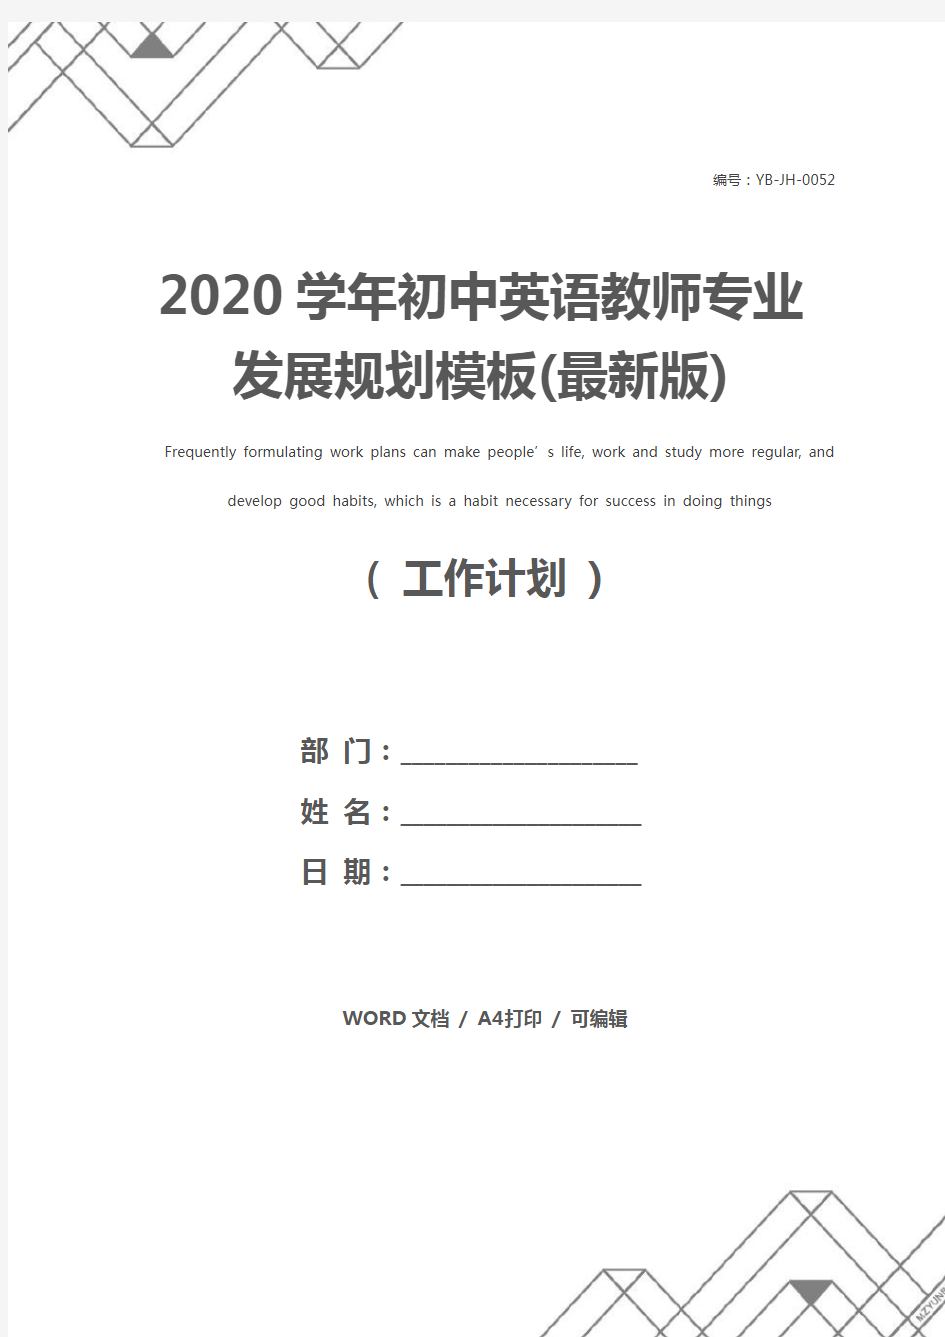 2020学年初中英语教师专业发展规划模板(最新版)